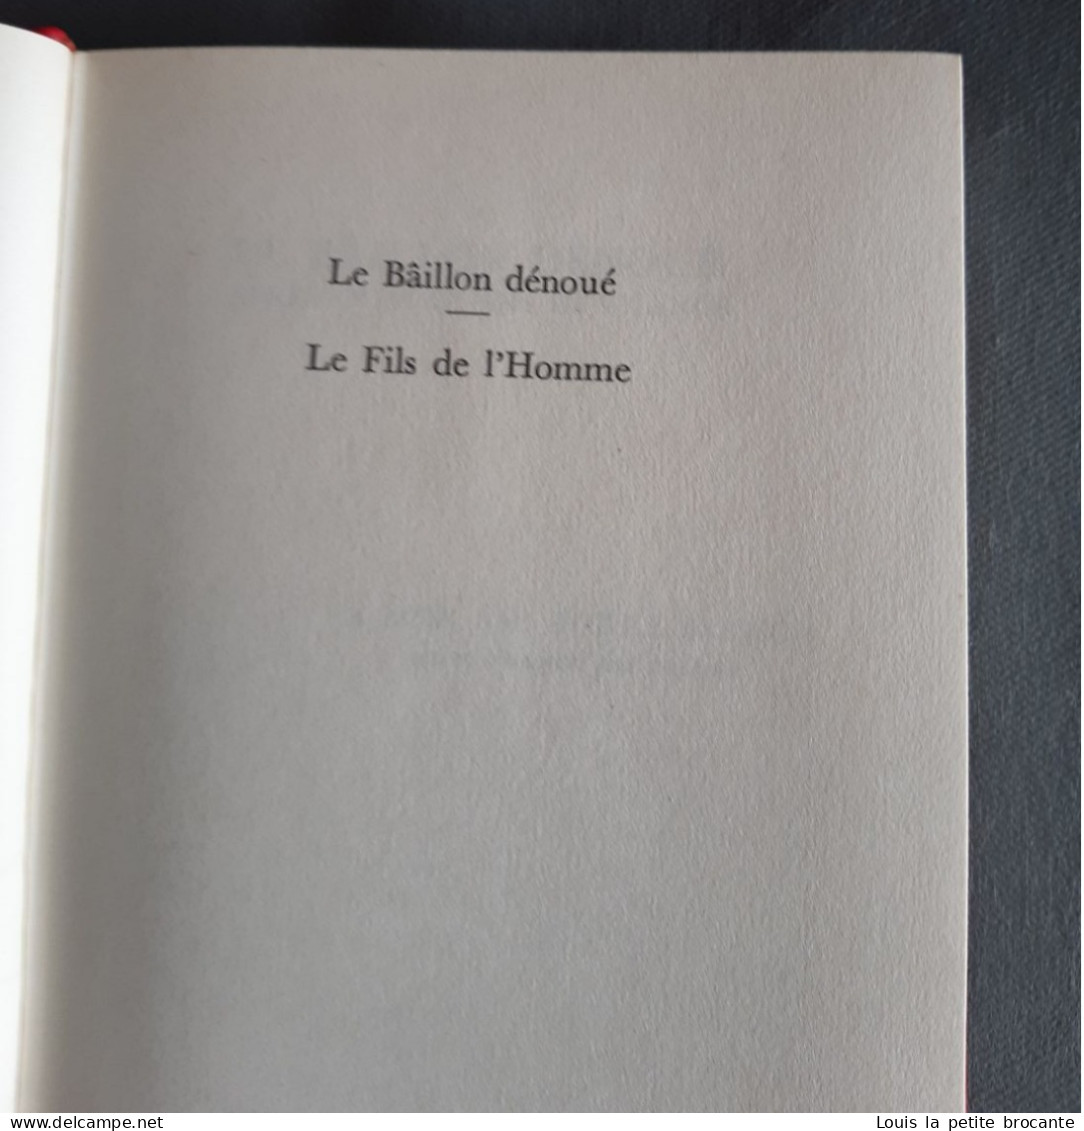 Les Chefs d'Œuvres de François MAURIAC, éditions Edito Service S.A. Genève, 26 livres avec tranches supérieures dorées,